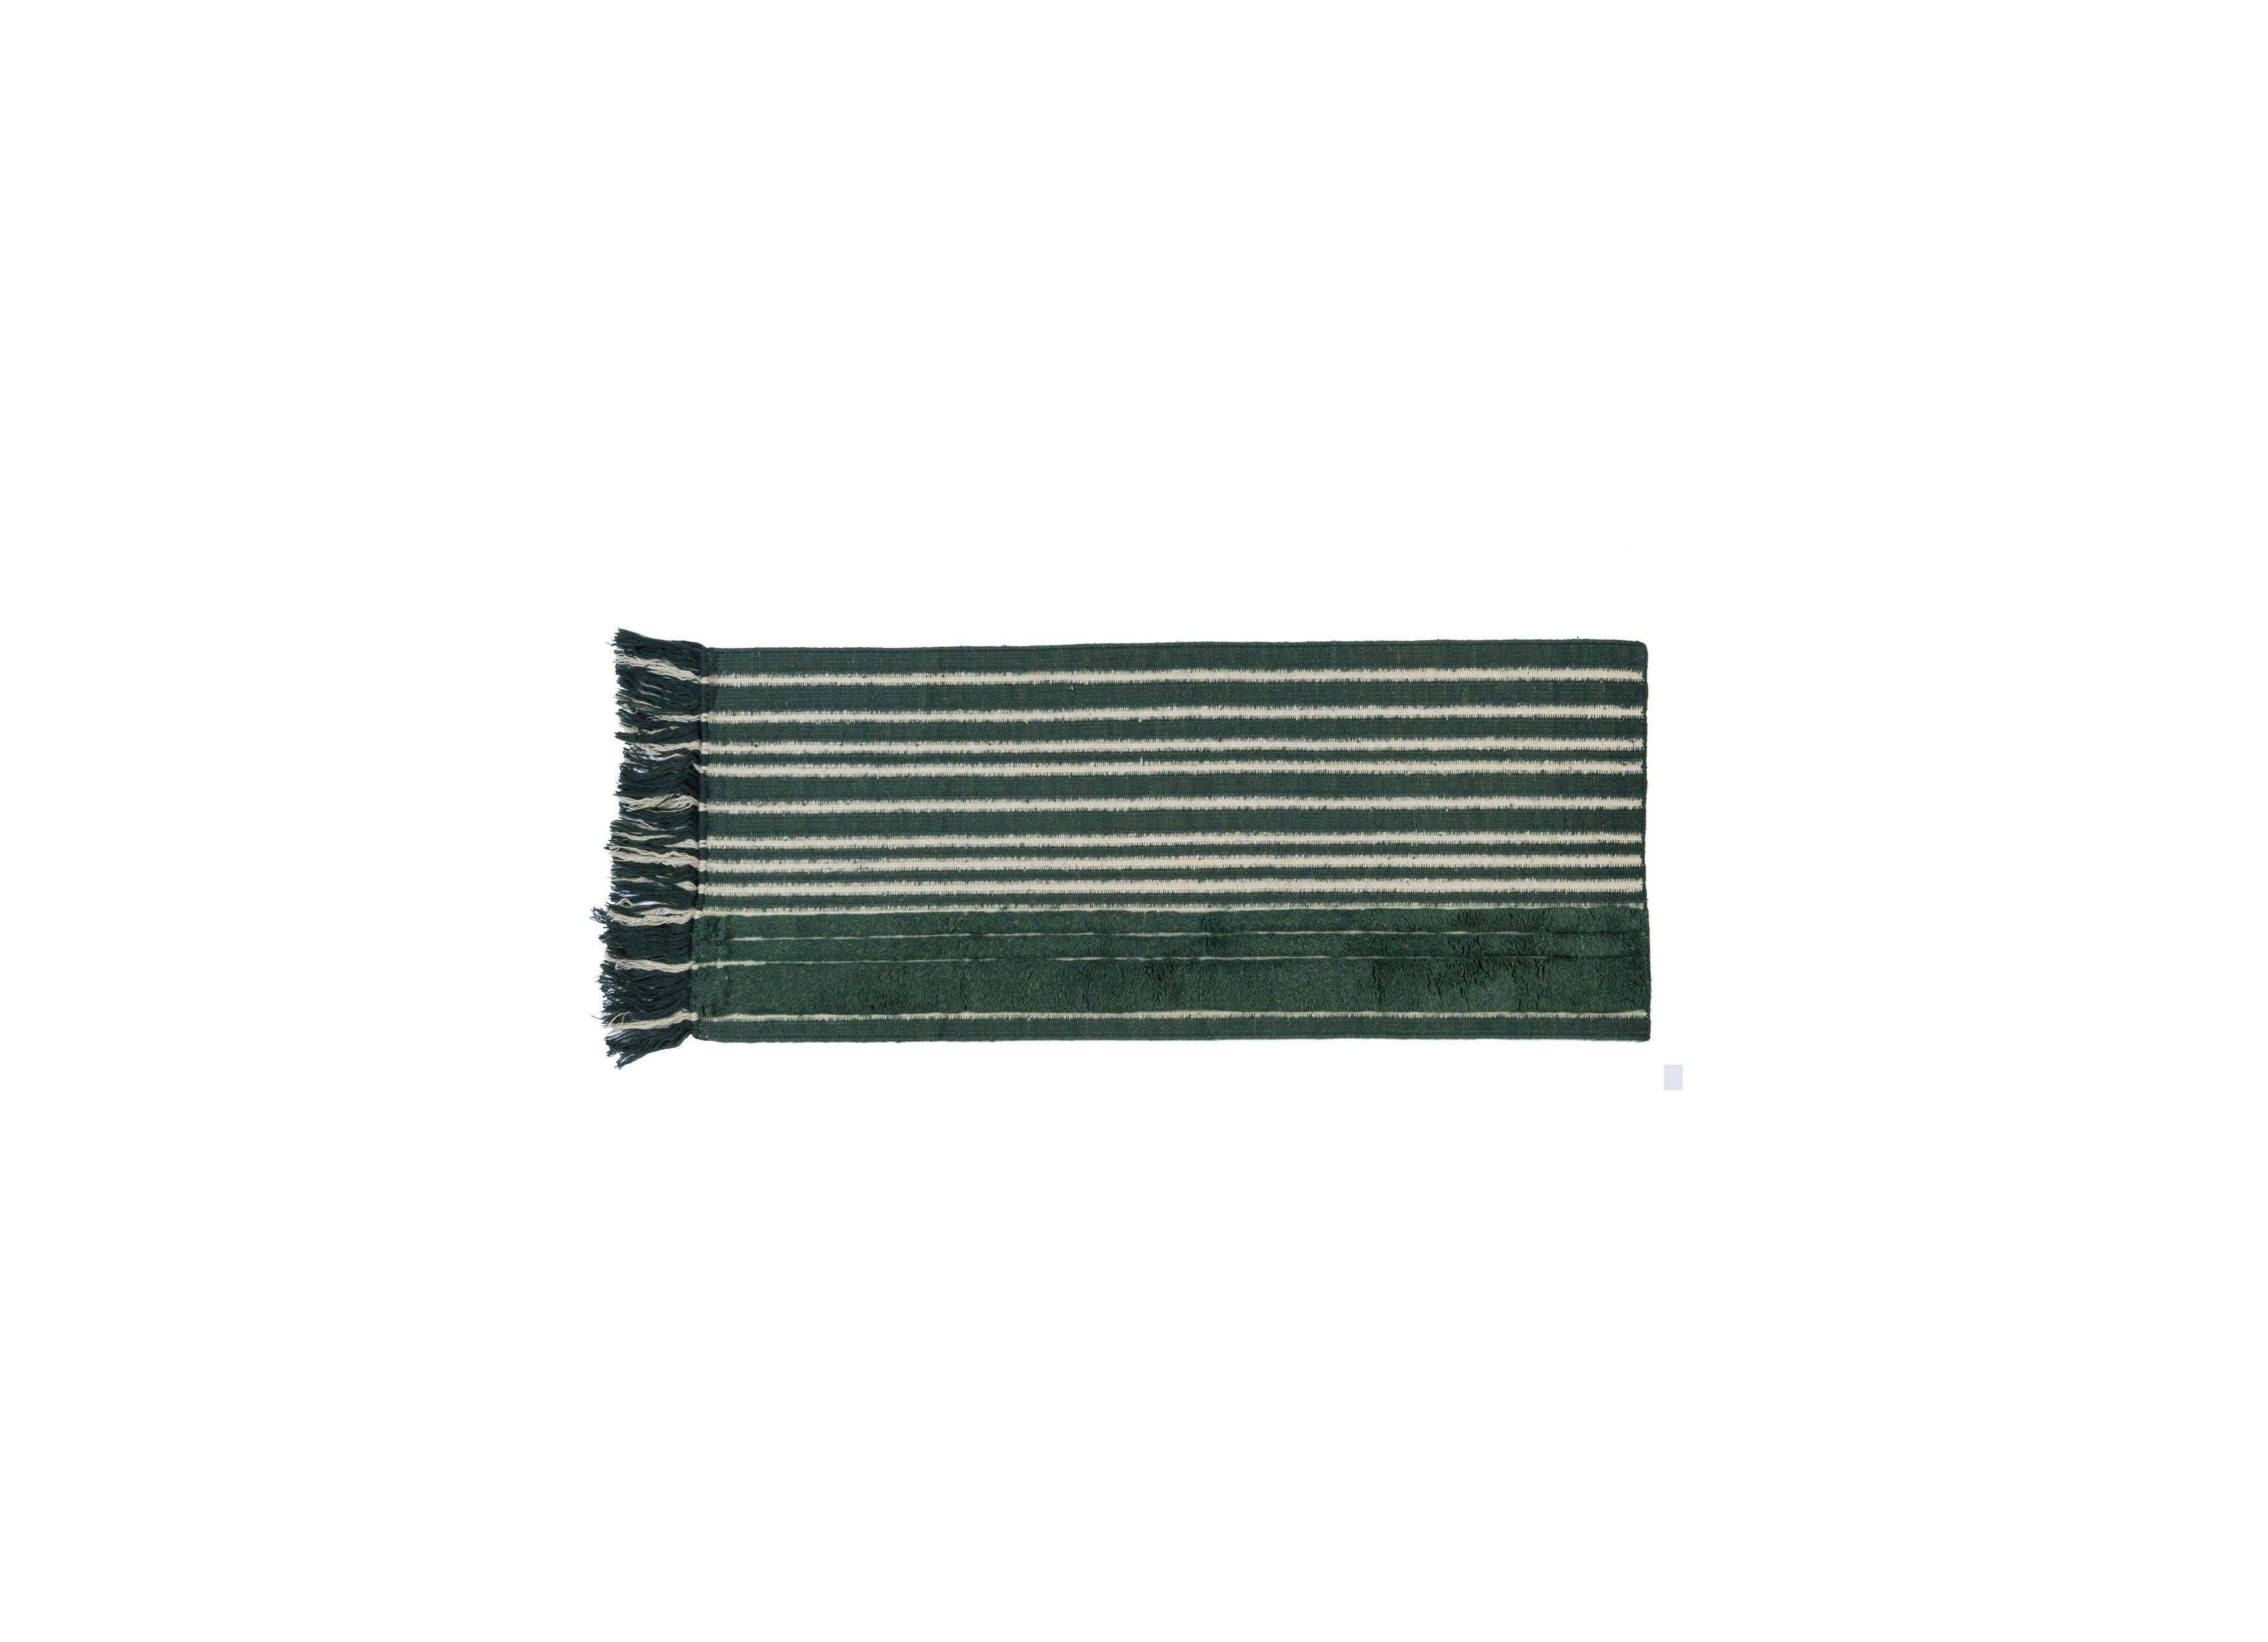 Nr. 281 freeplay handgeknüpfter Teppich von Lyk Carpet
Abmessungen: B 60 x L 150 cm.
MATERIALIEN: 100% tibetische Hochlandwolle, handgekämmte und handgesponnene Schurwolle, natürliche pflanzengefärbte Wolle, 100 Knoten pro Quadratzoll.
Handgeknüpfte